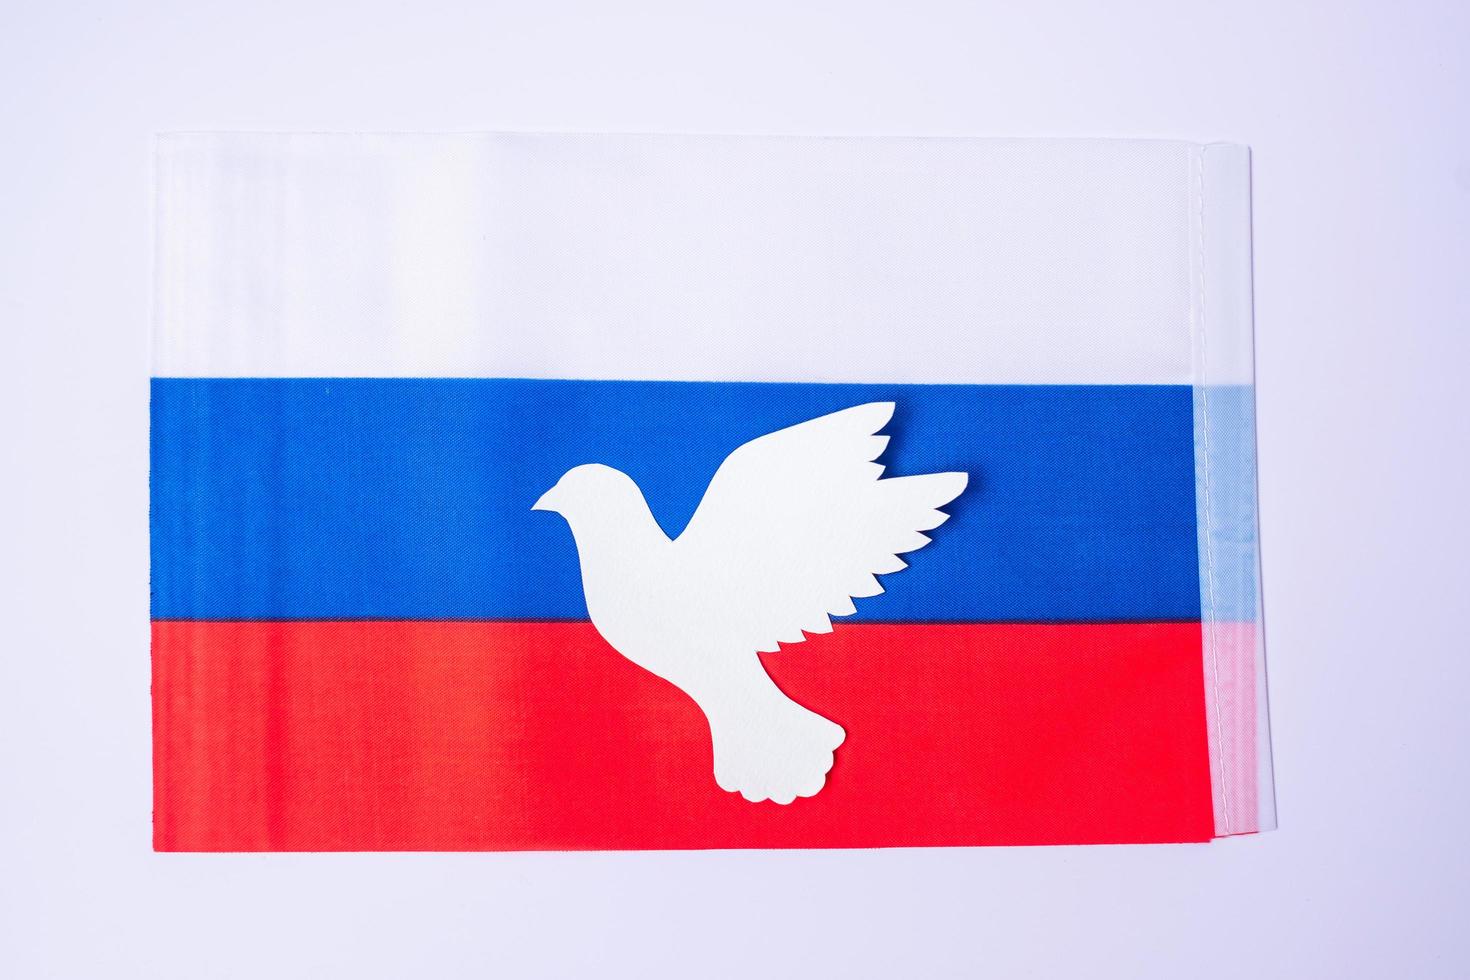 apoyo a rusia en la guerra, paloma de la paz con bandera de rusia. oren, no a la guerra, detengan la guerra y apoyen los conceptos de rusia foto